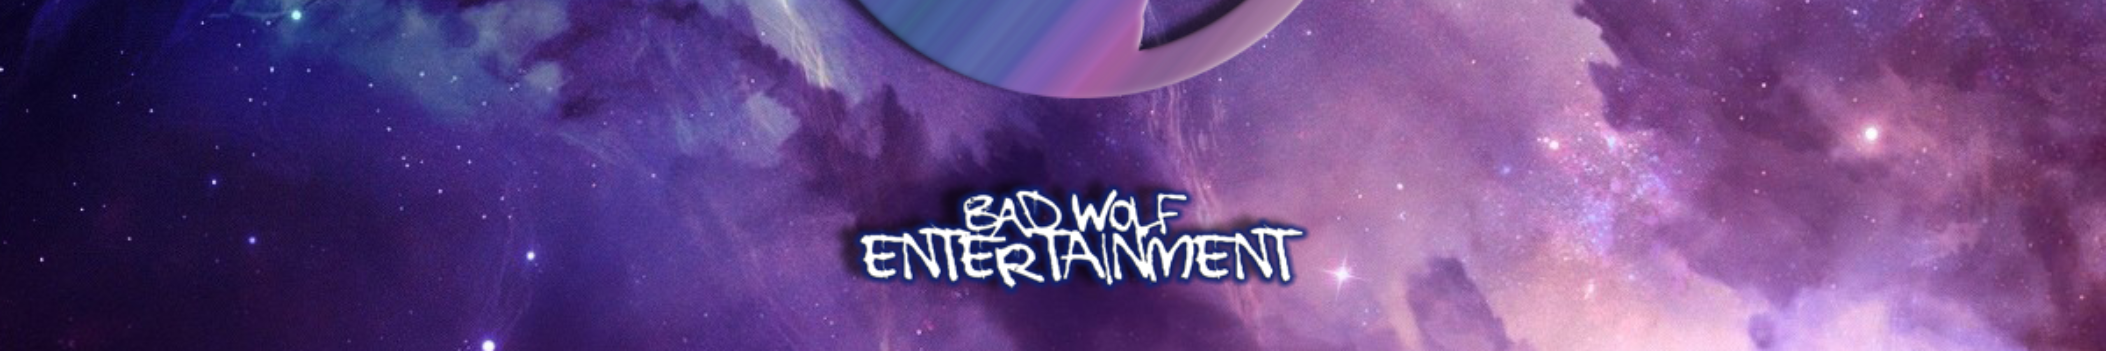 badwolfentertainment